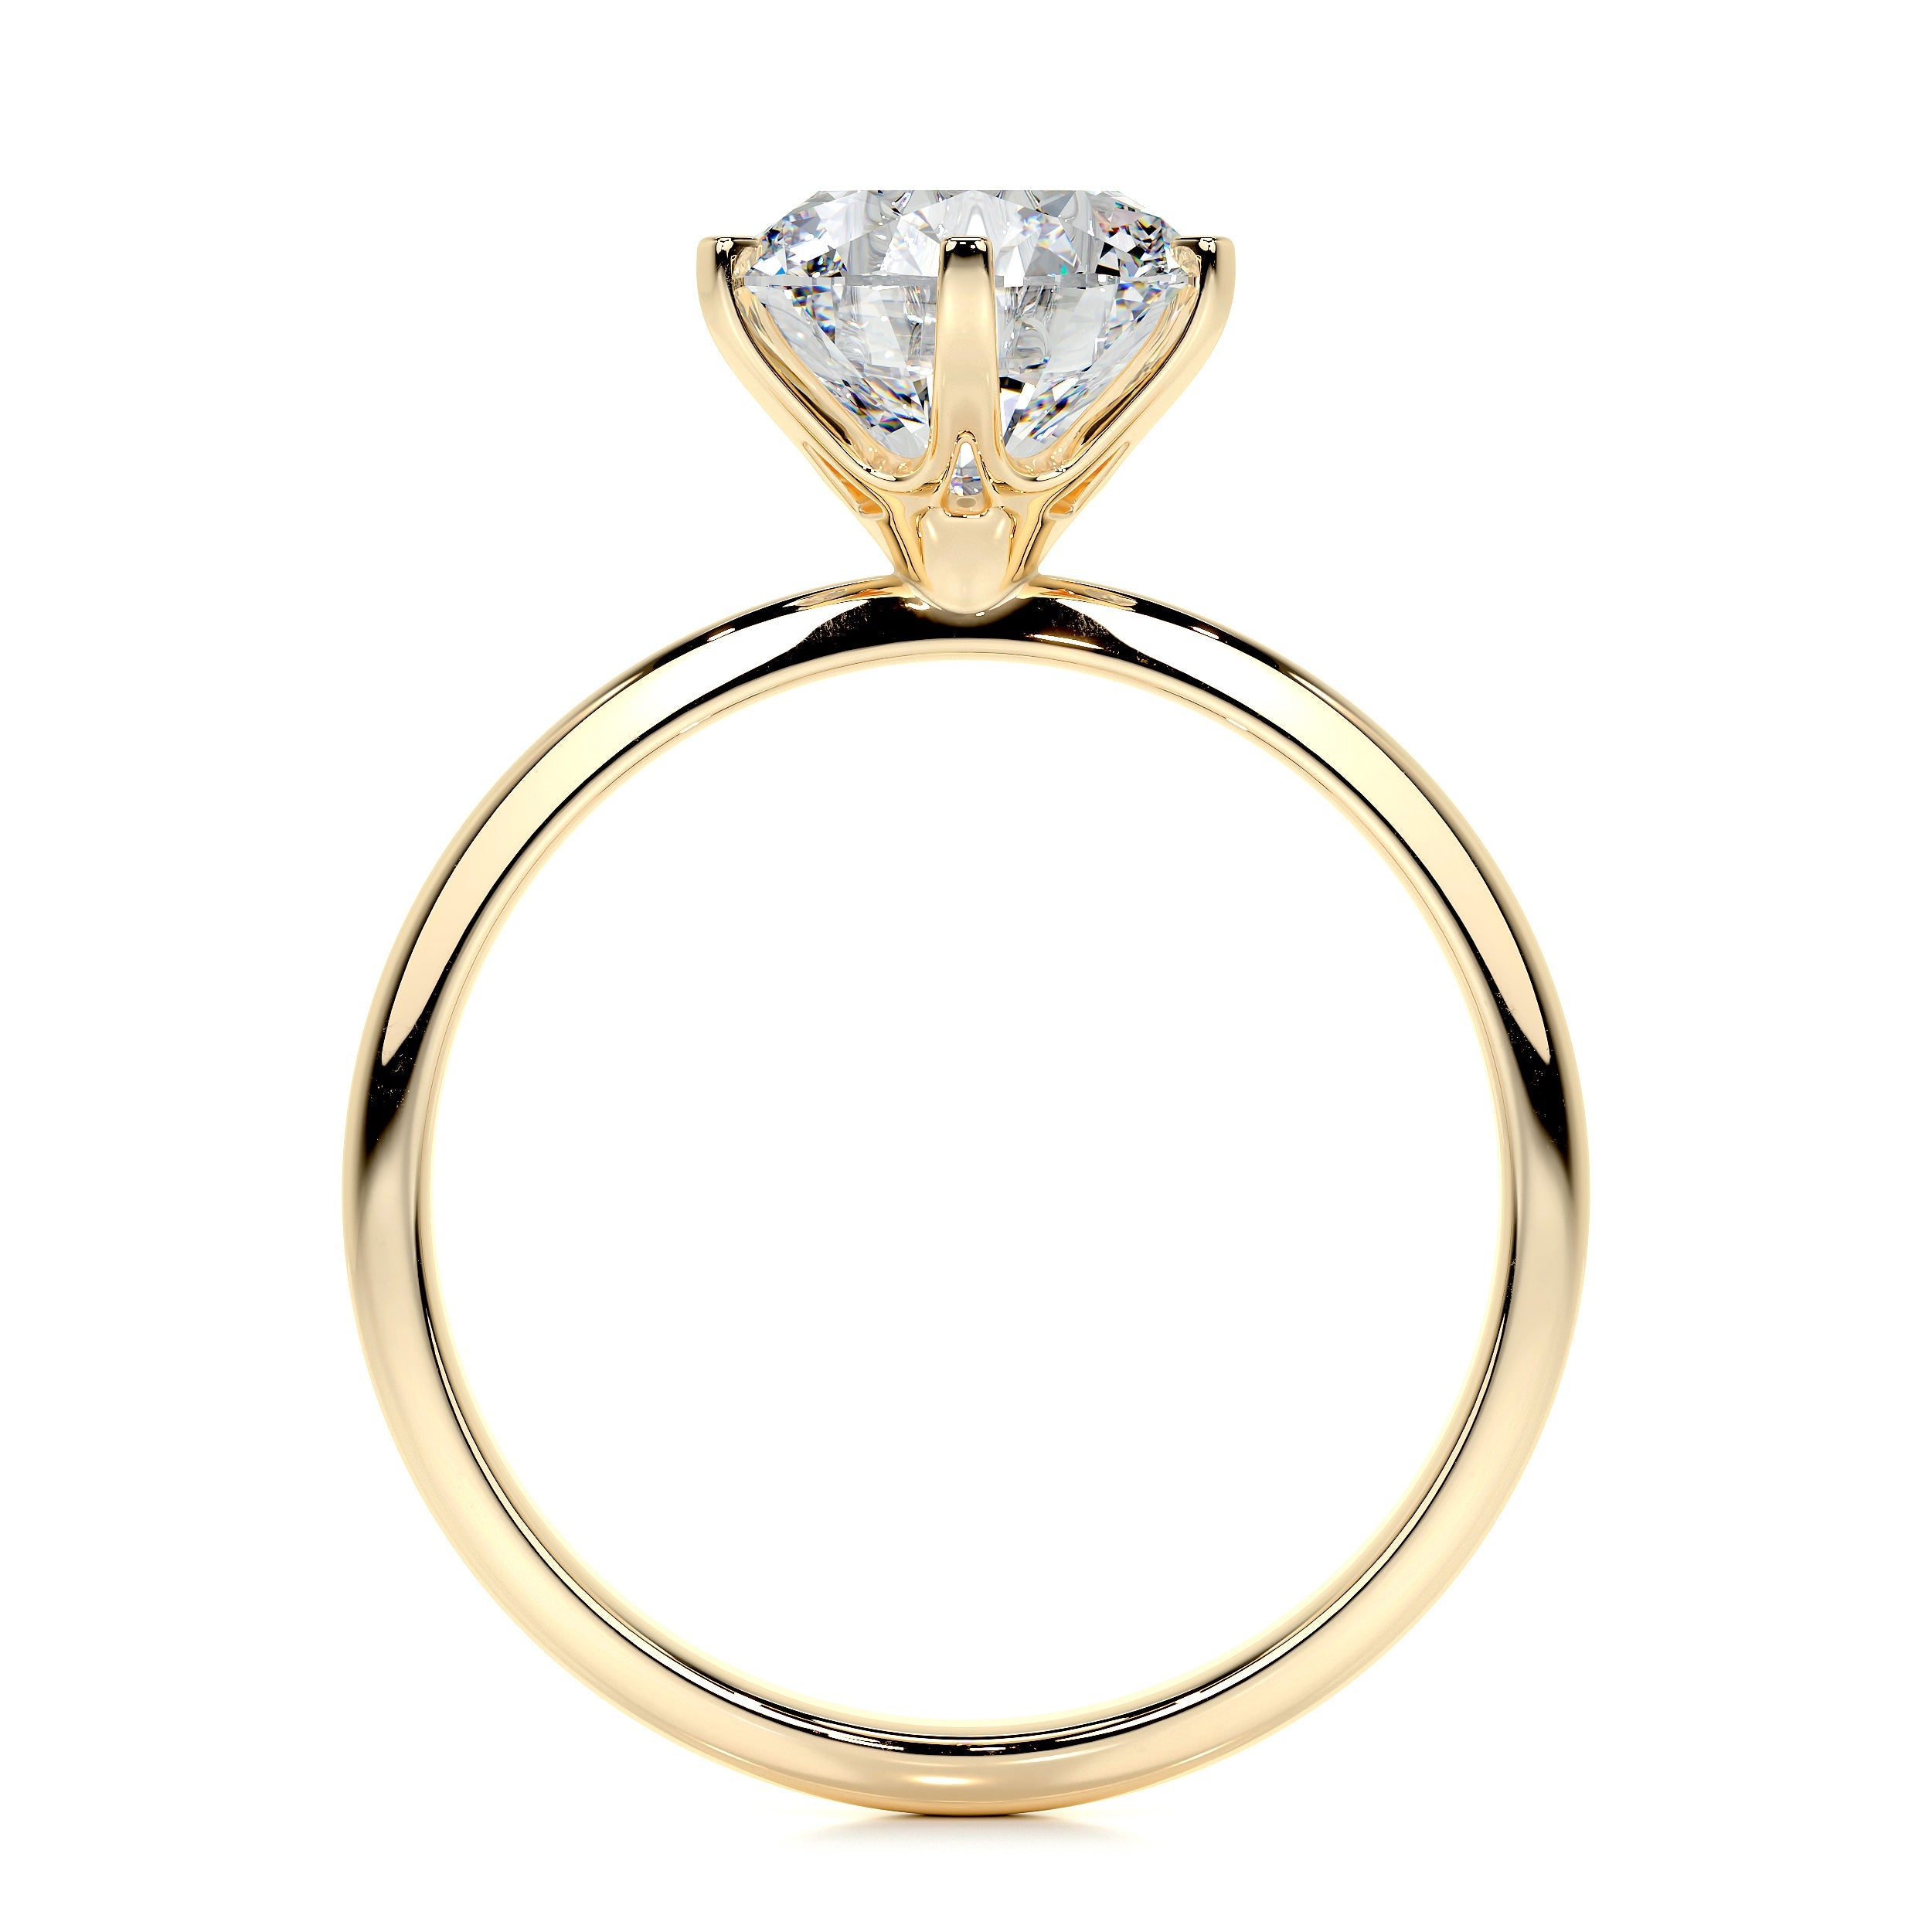 Samantha Lab Grown Diamond Ring -18K Yellow Gold